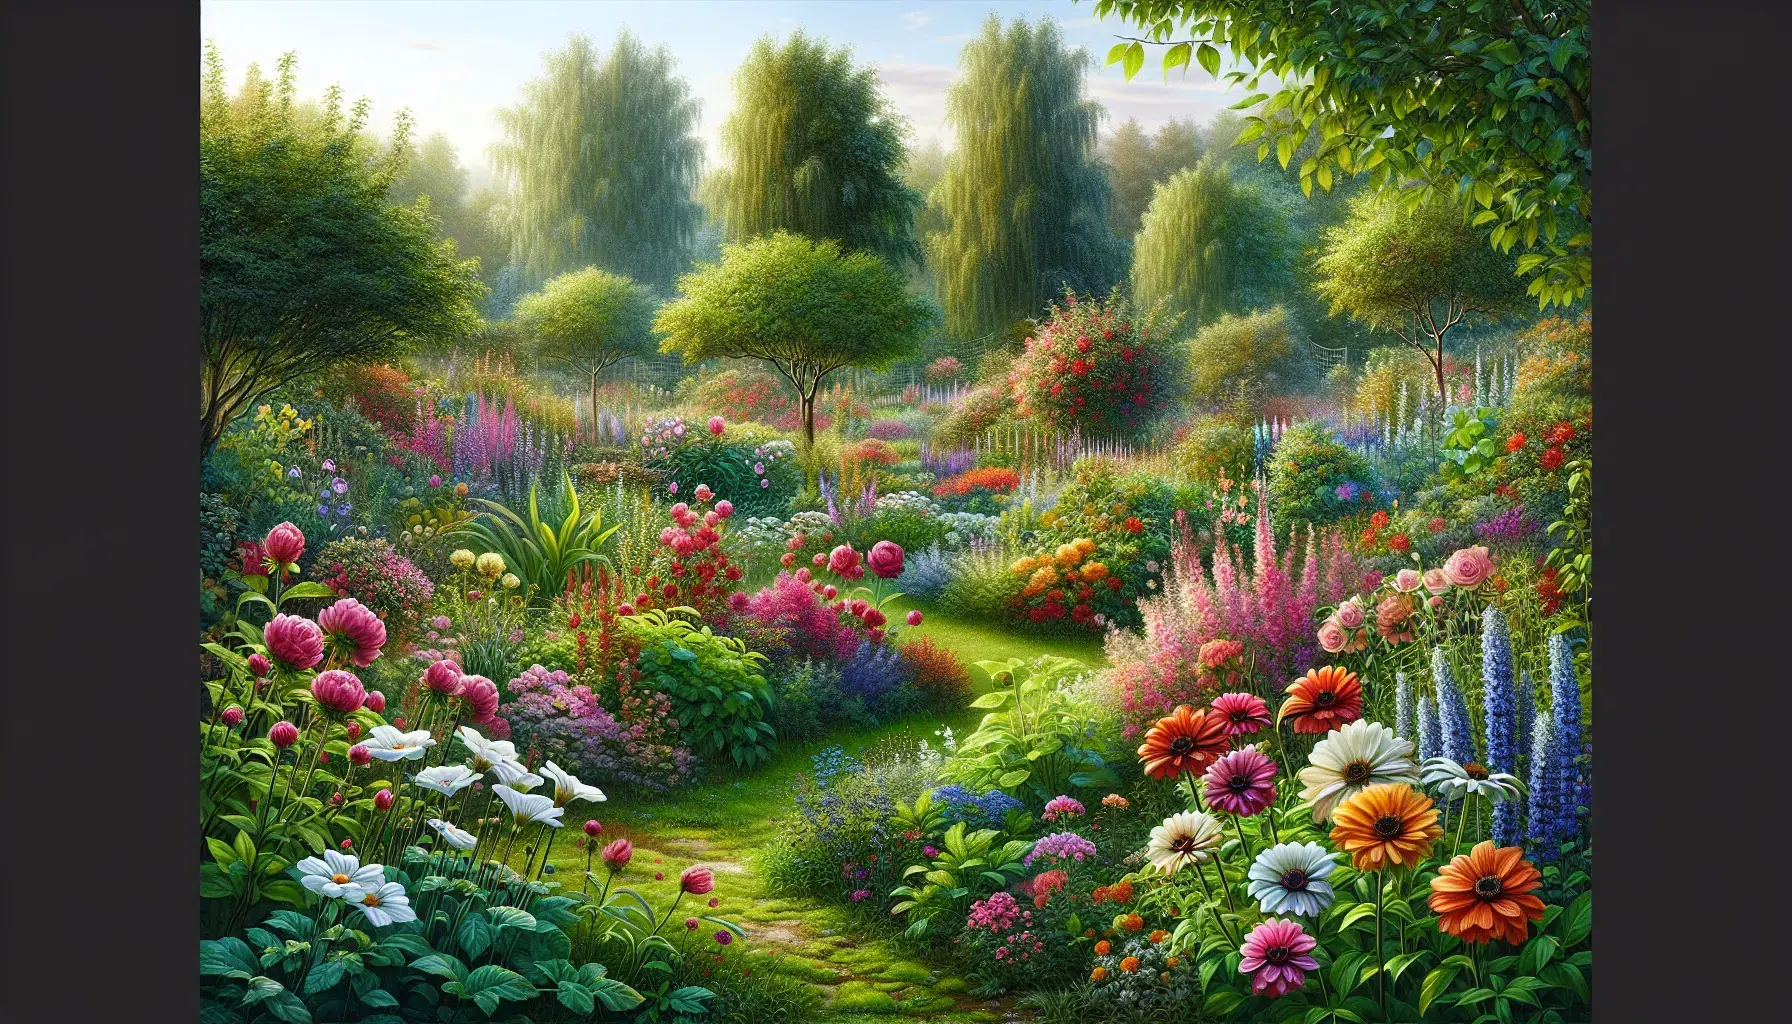 Imagen de un jardín colorido con diversas plantas en flor durante el mes de septiembre.